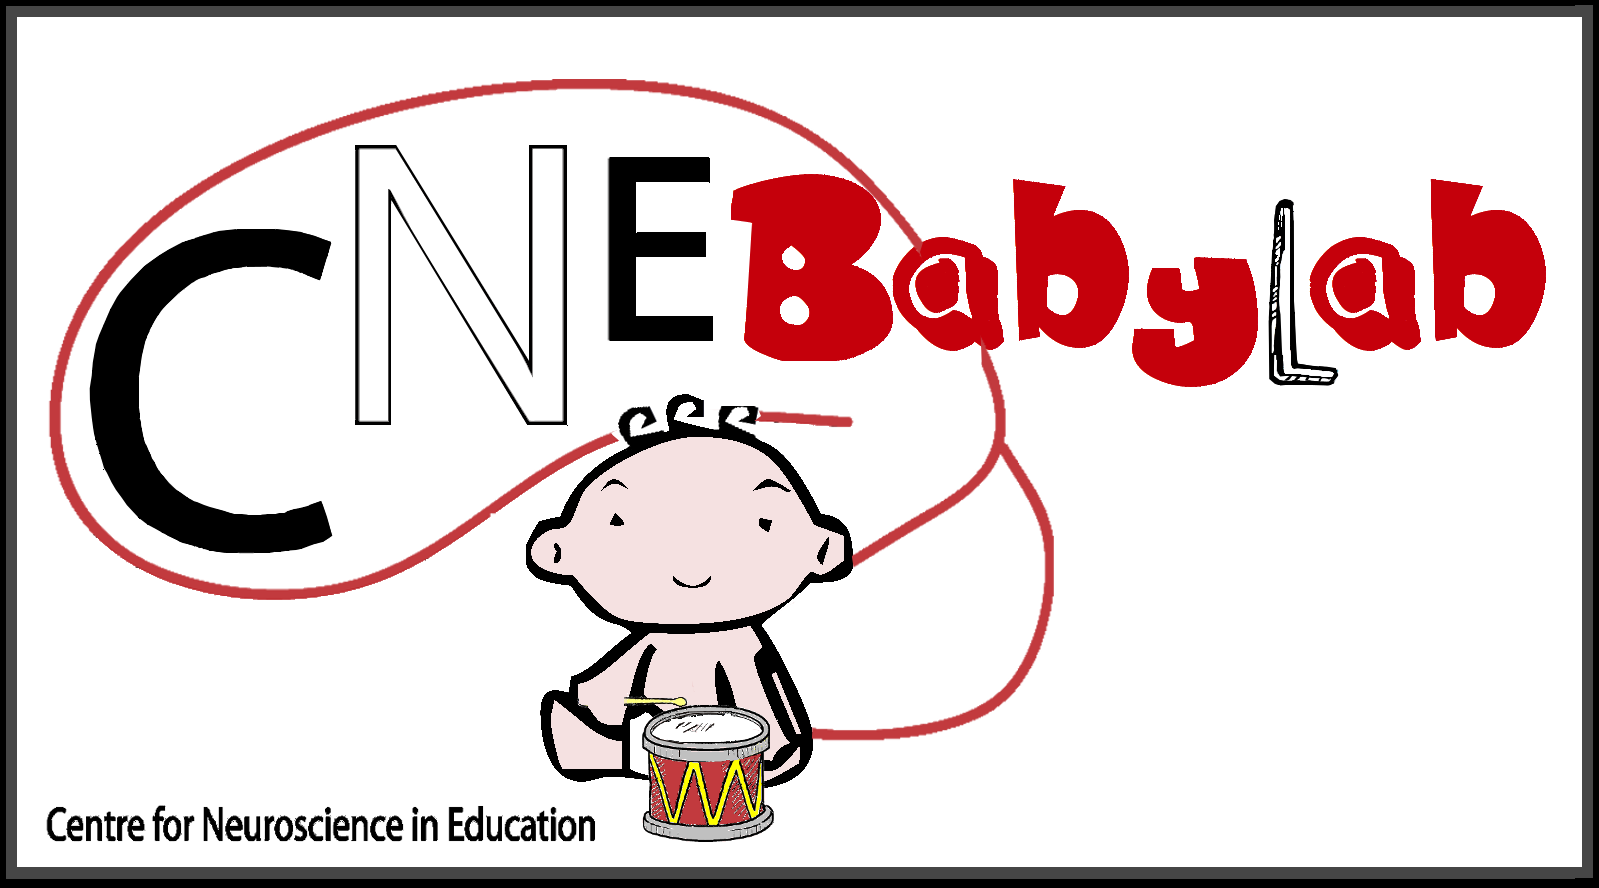 CNE Babylab